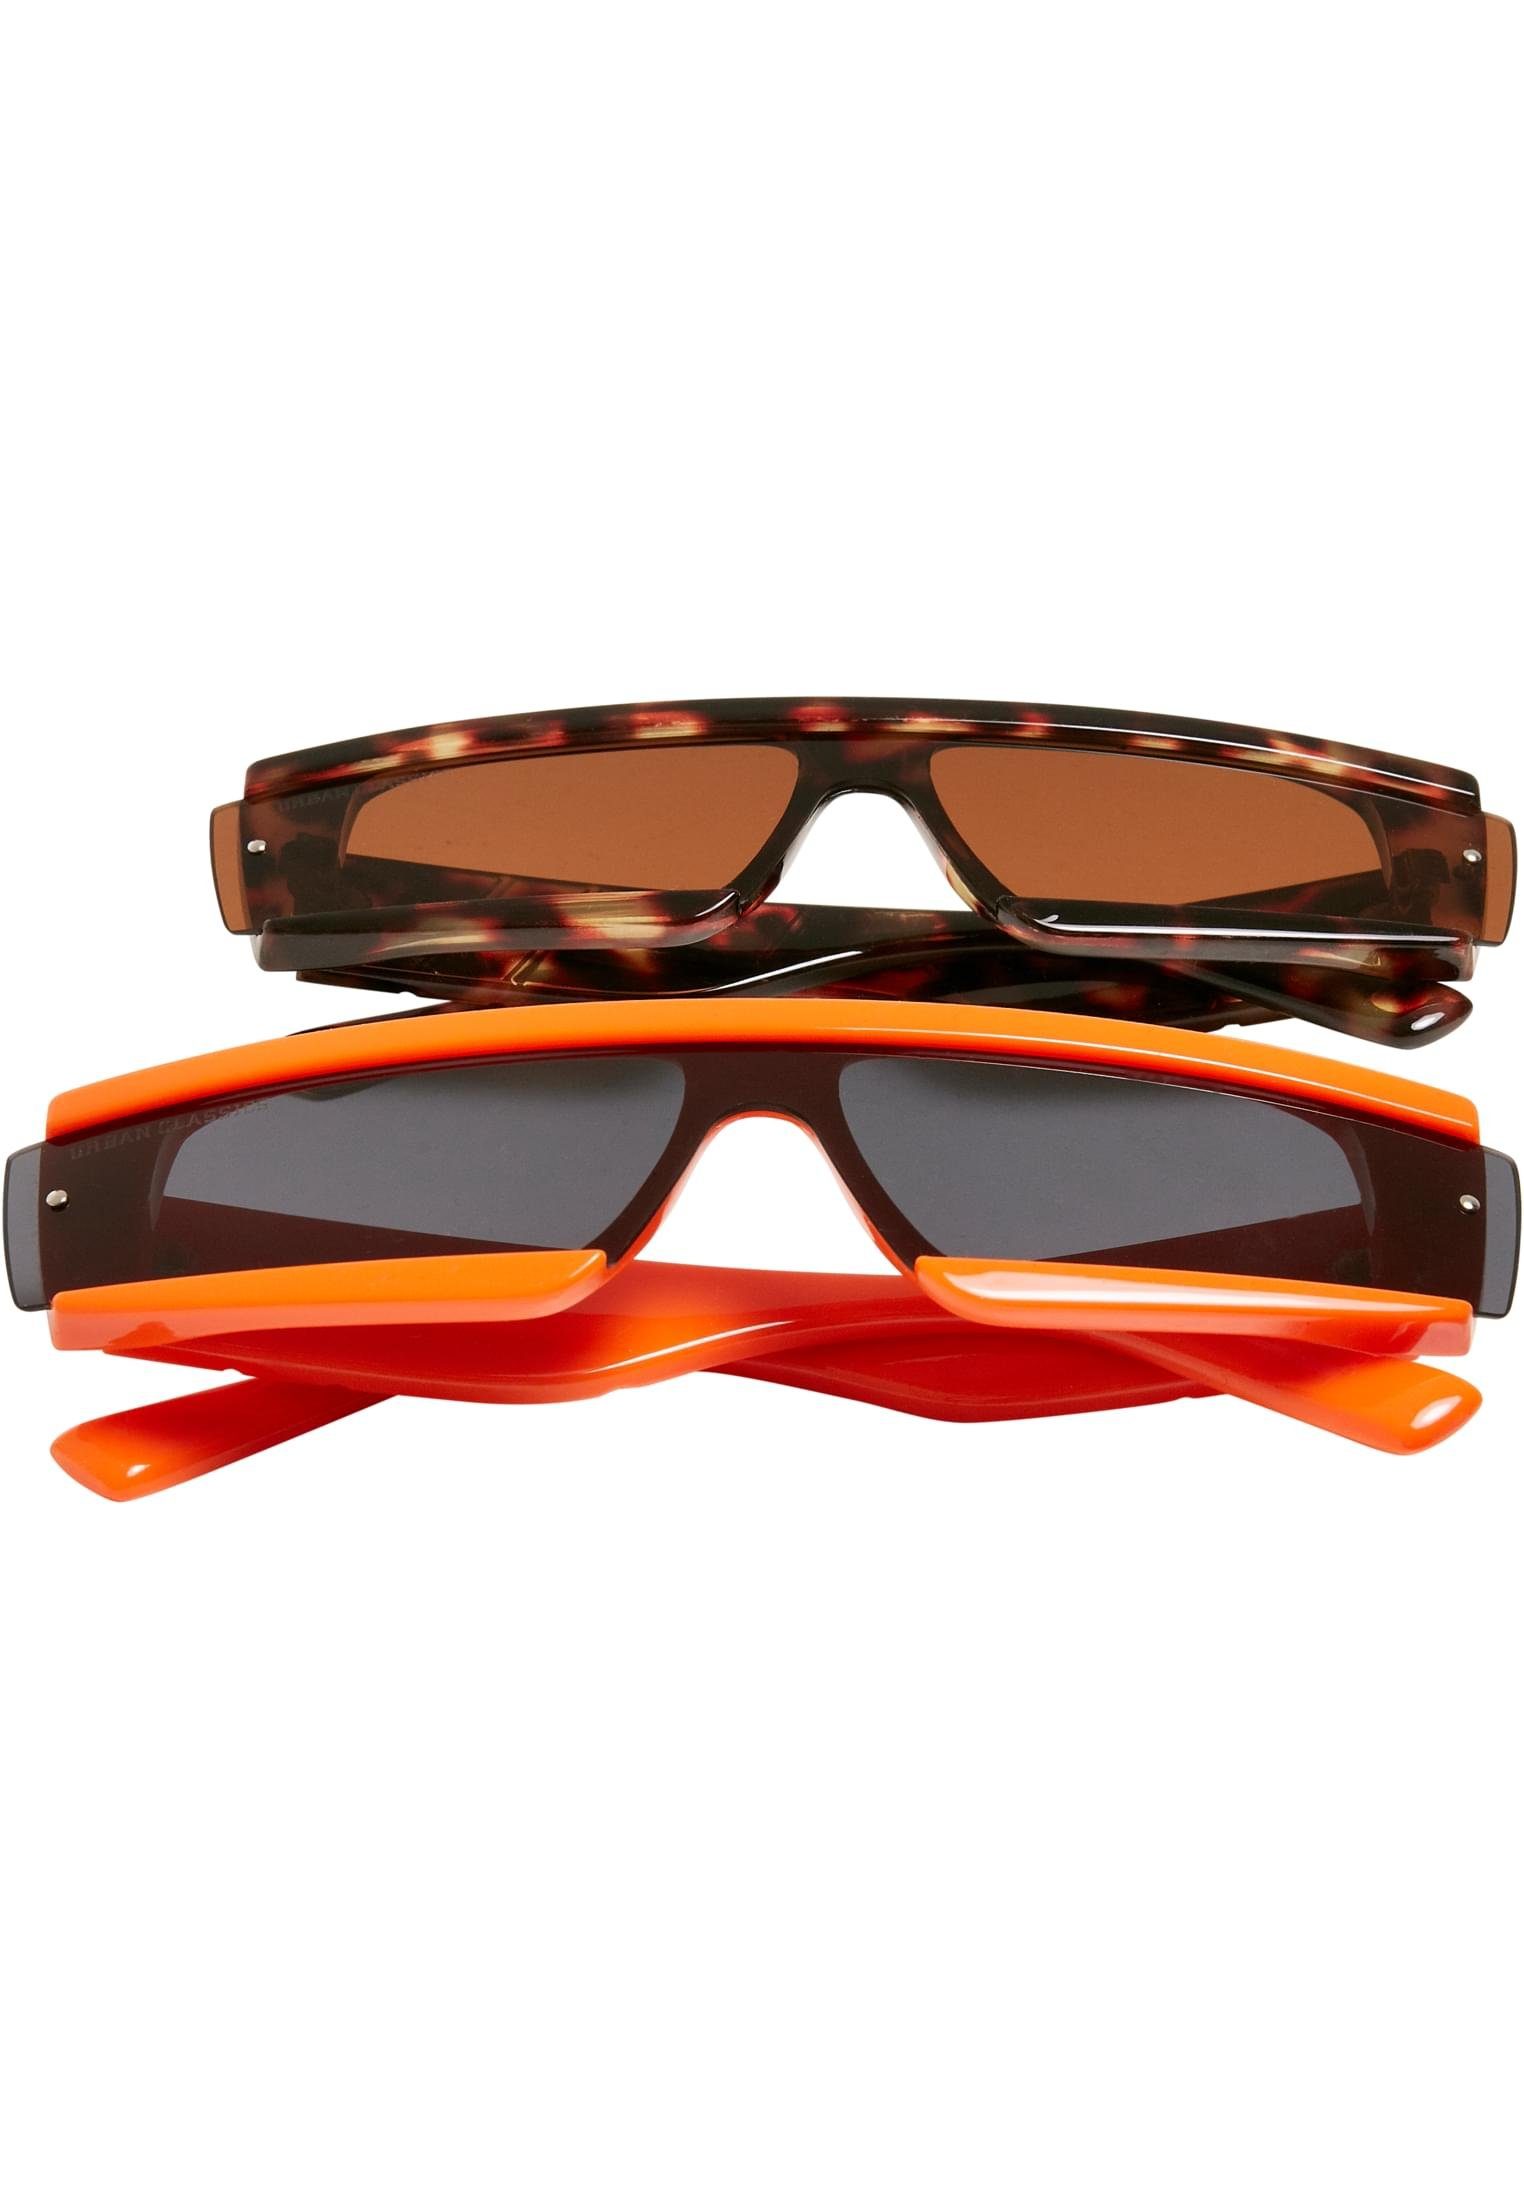 URBAN CLASSICS Sonnenbrille Unisex Alabama orange/brown Sunglasses 2-Pack